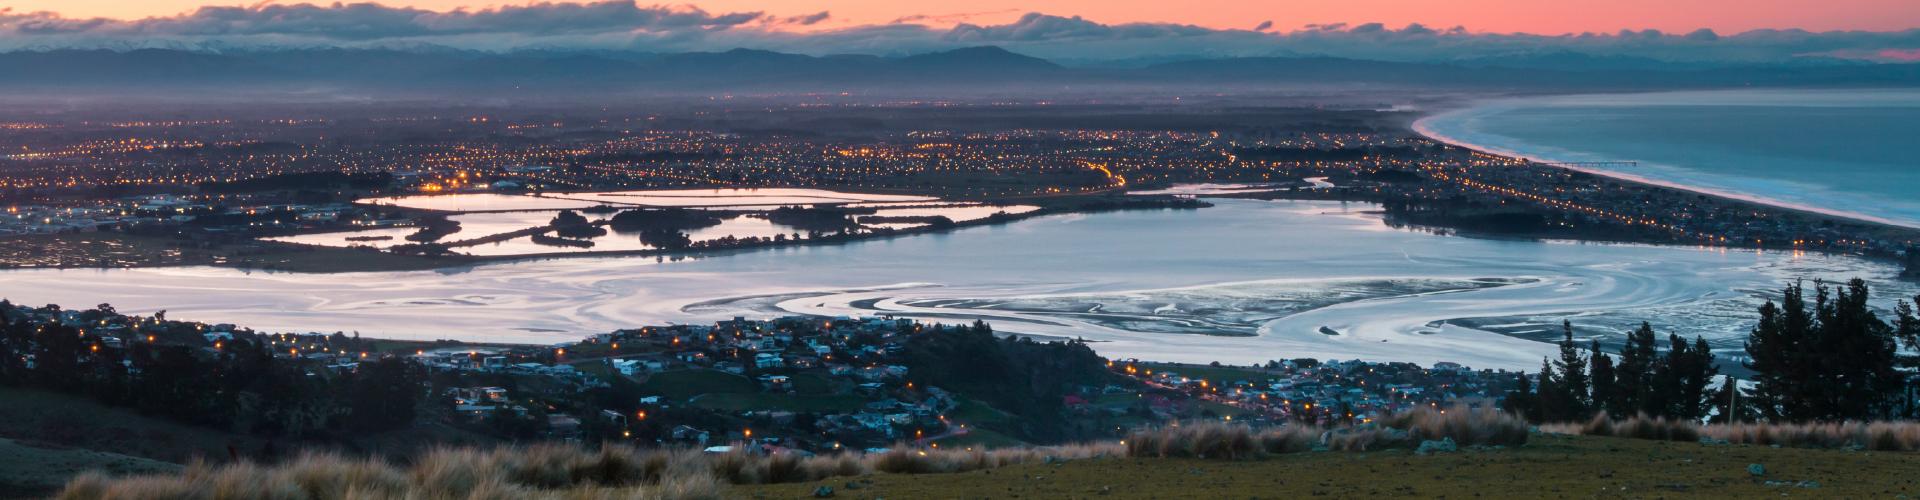 An evening landscape shot of Christchurch taken on a hill